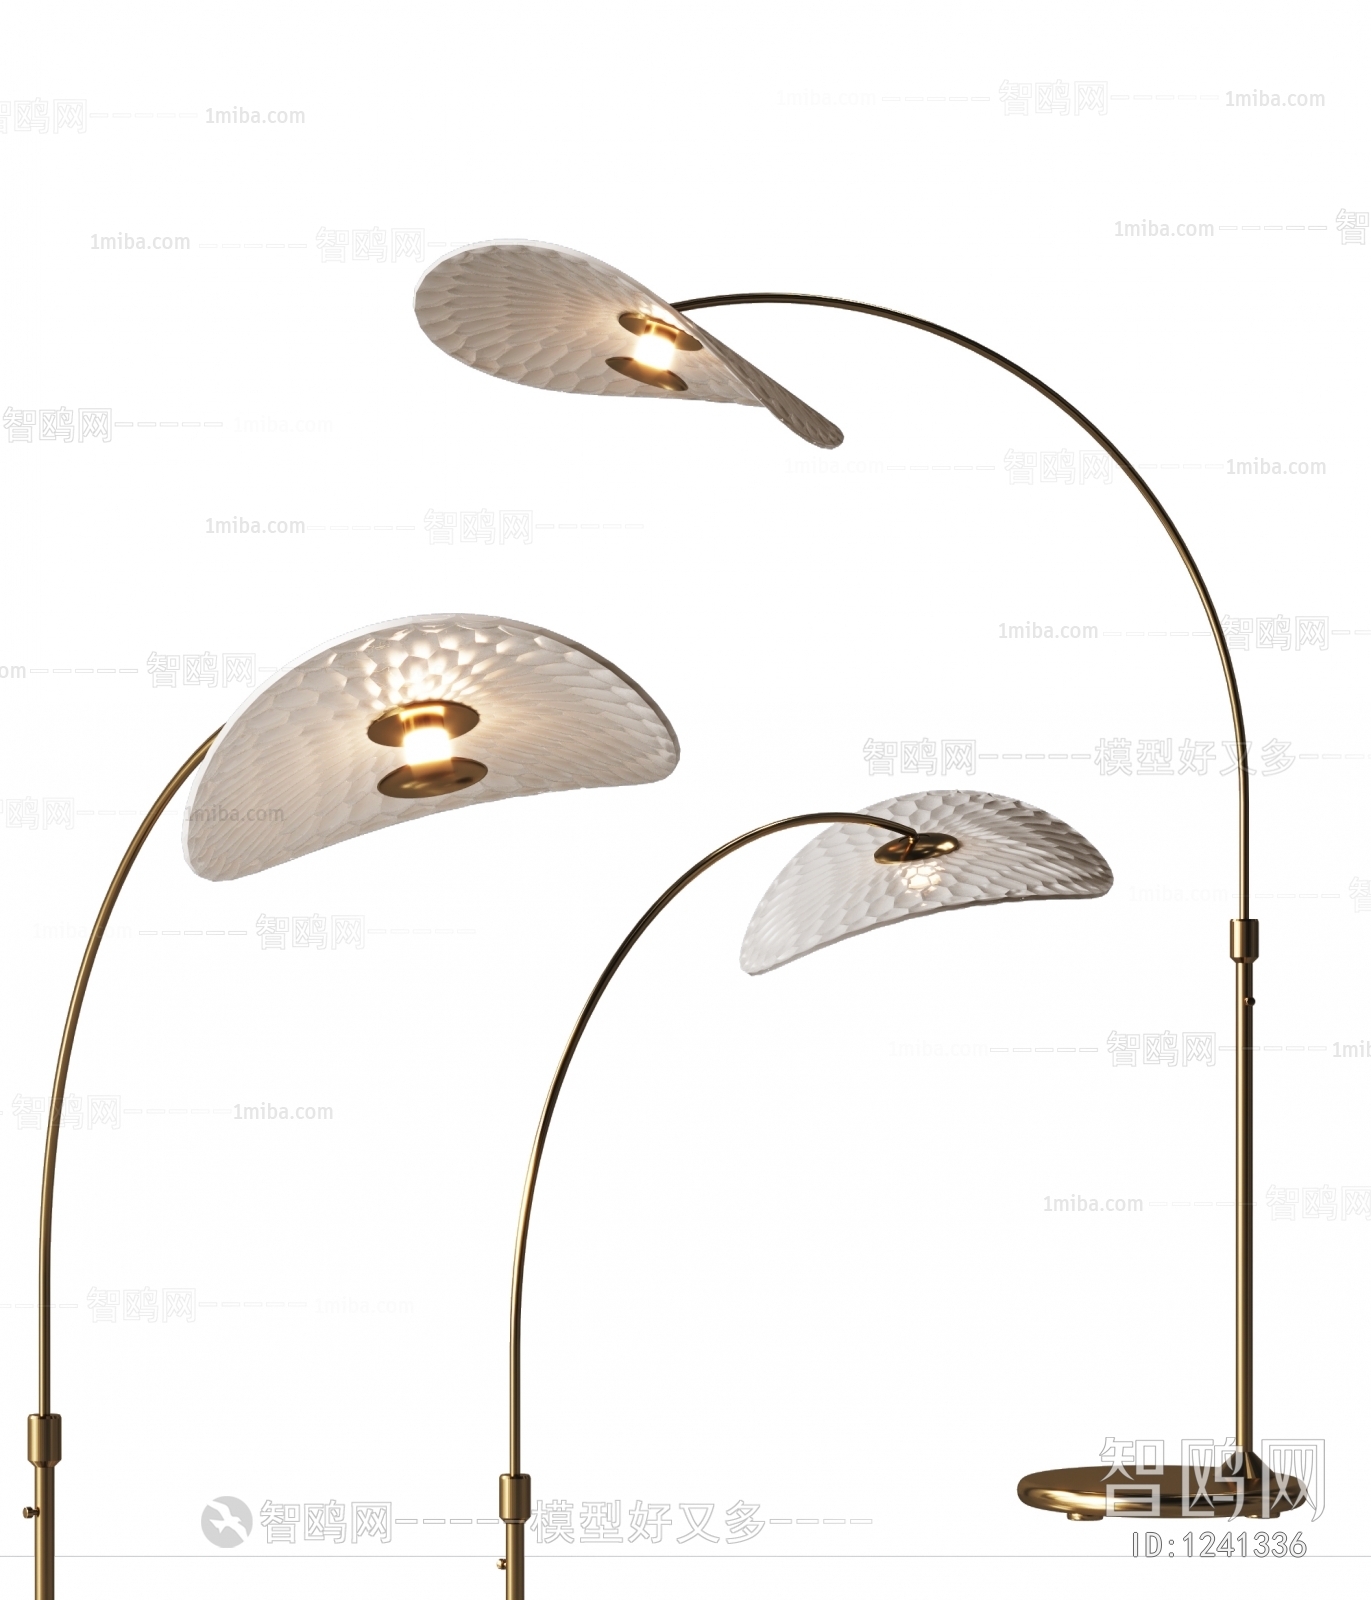 Modern Fishing Lamp